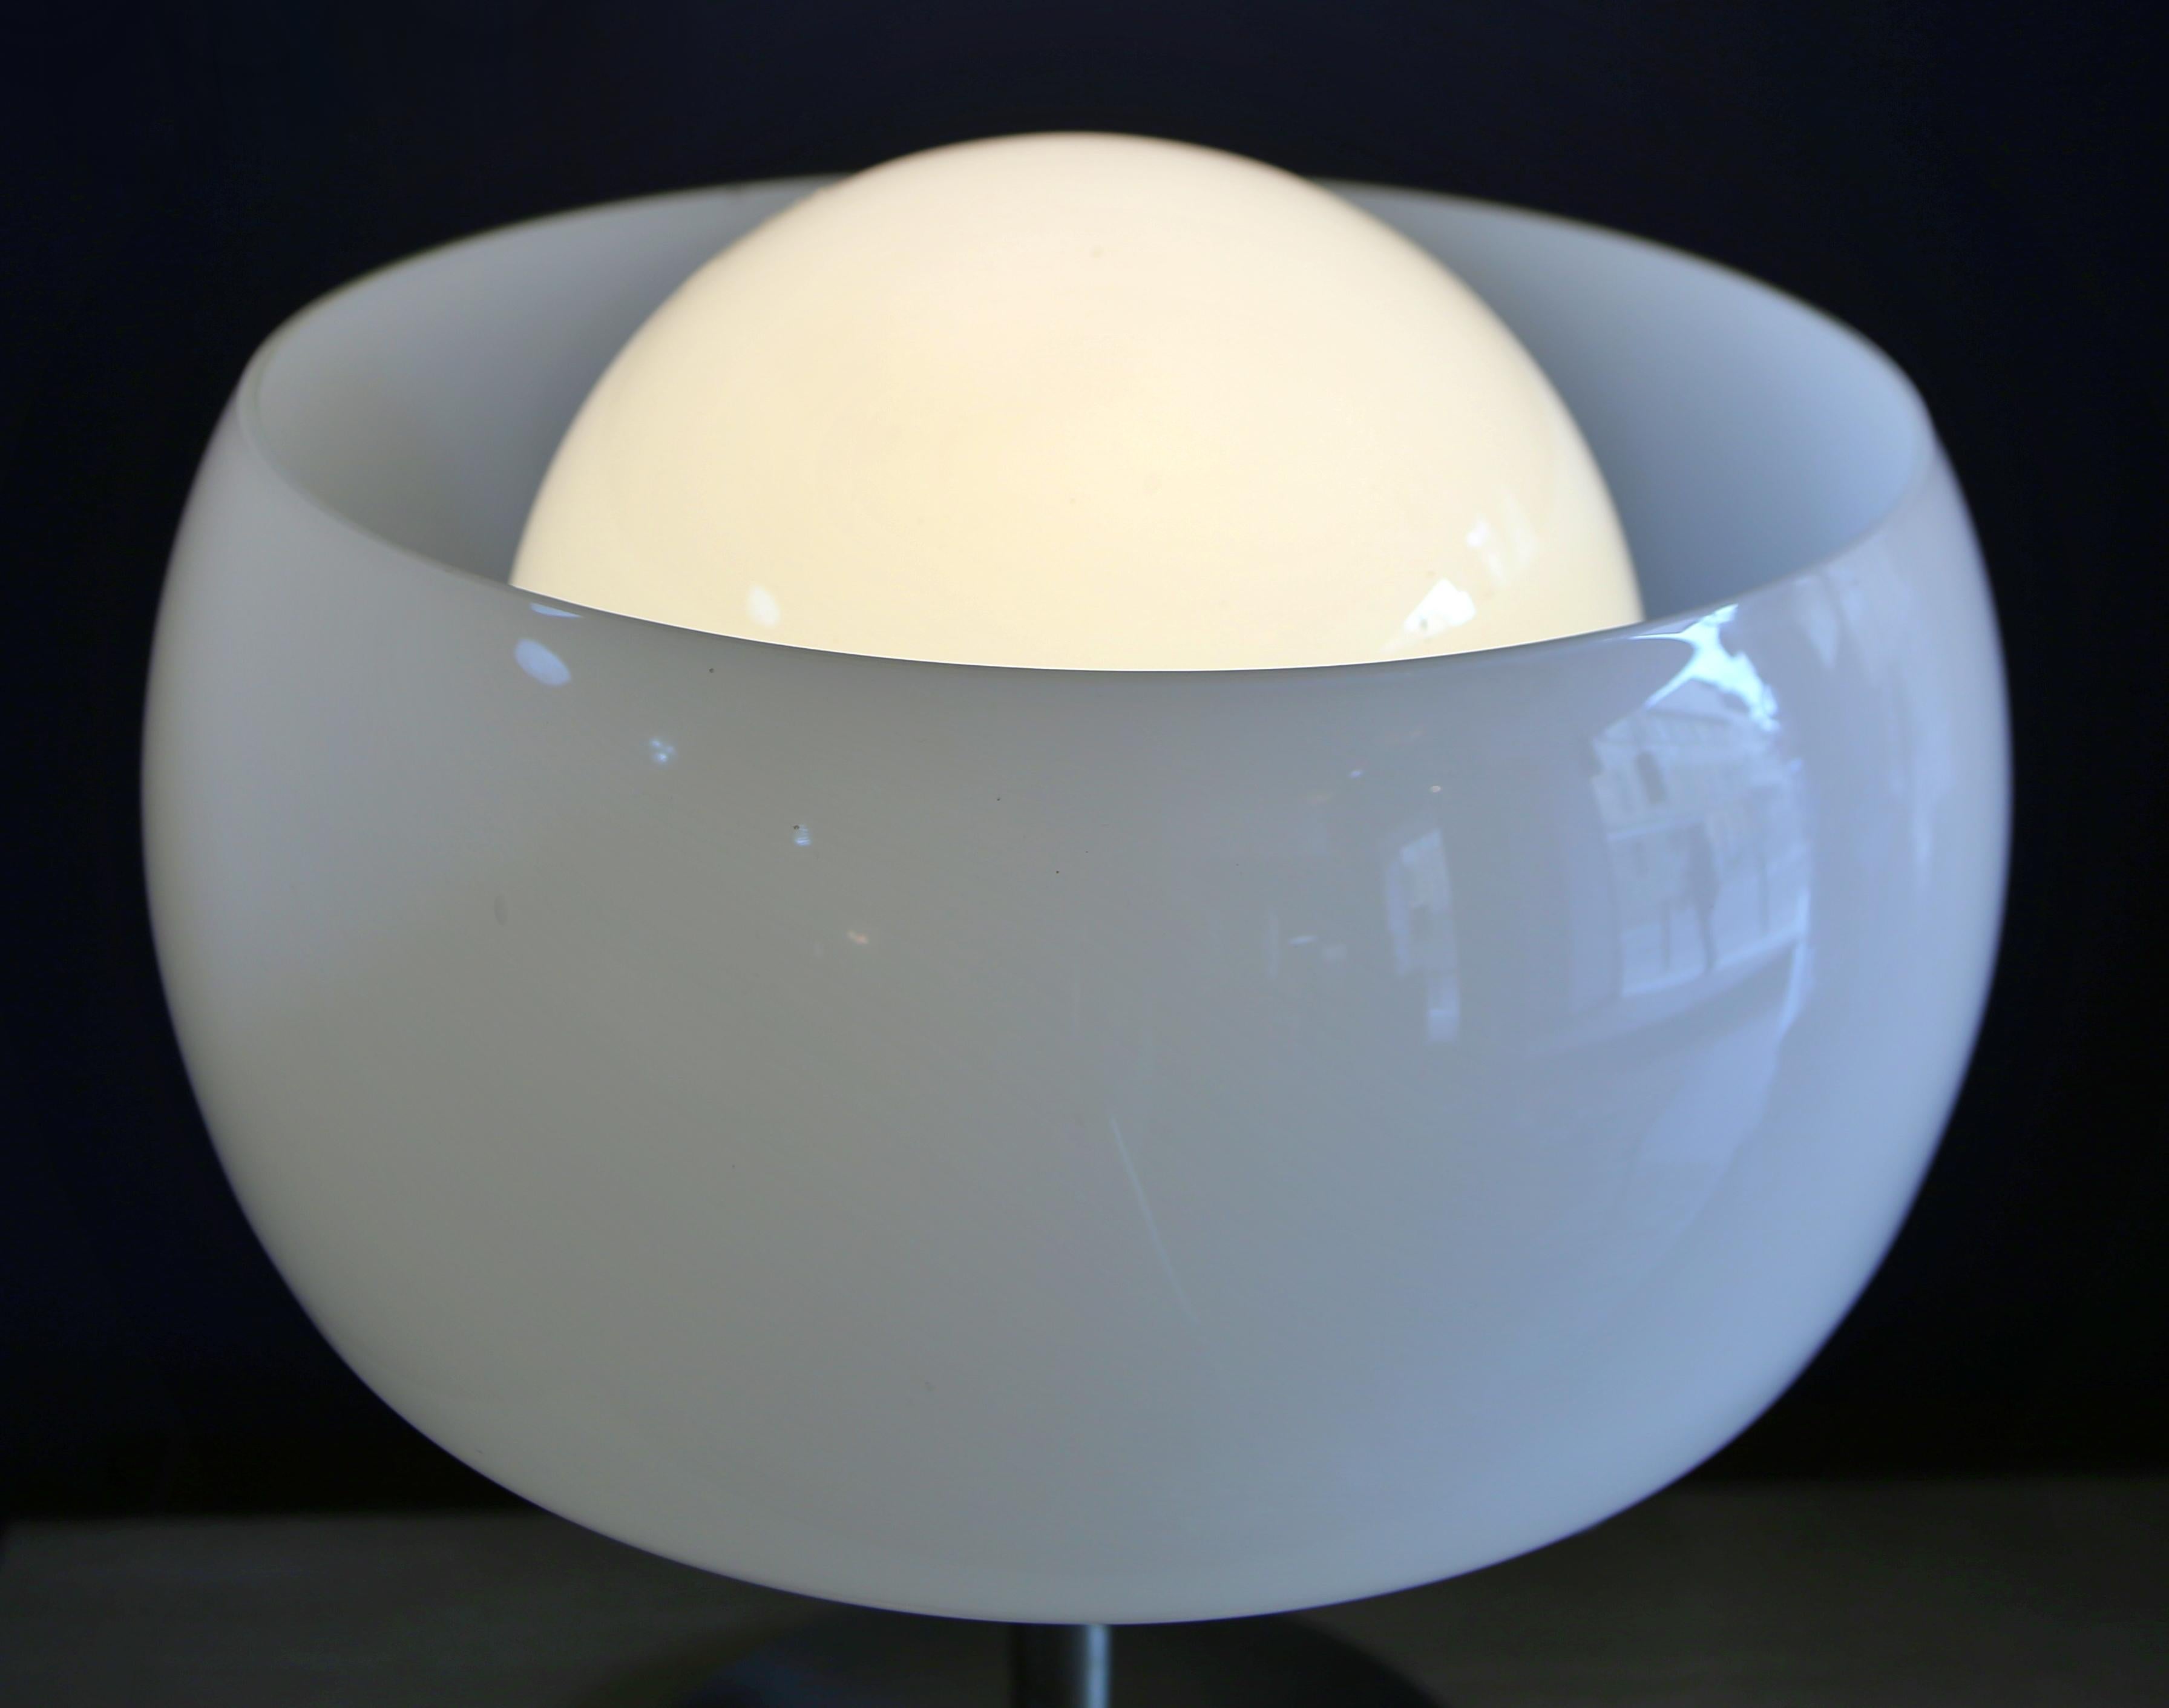 VICO MAGISTRETTI
Lampe de table 'Erse' pour ARTEMIDE, 1964.
Laiton chromé brossé, verre opalin.